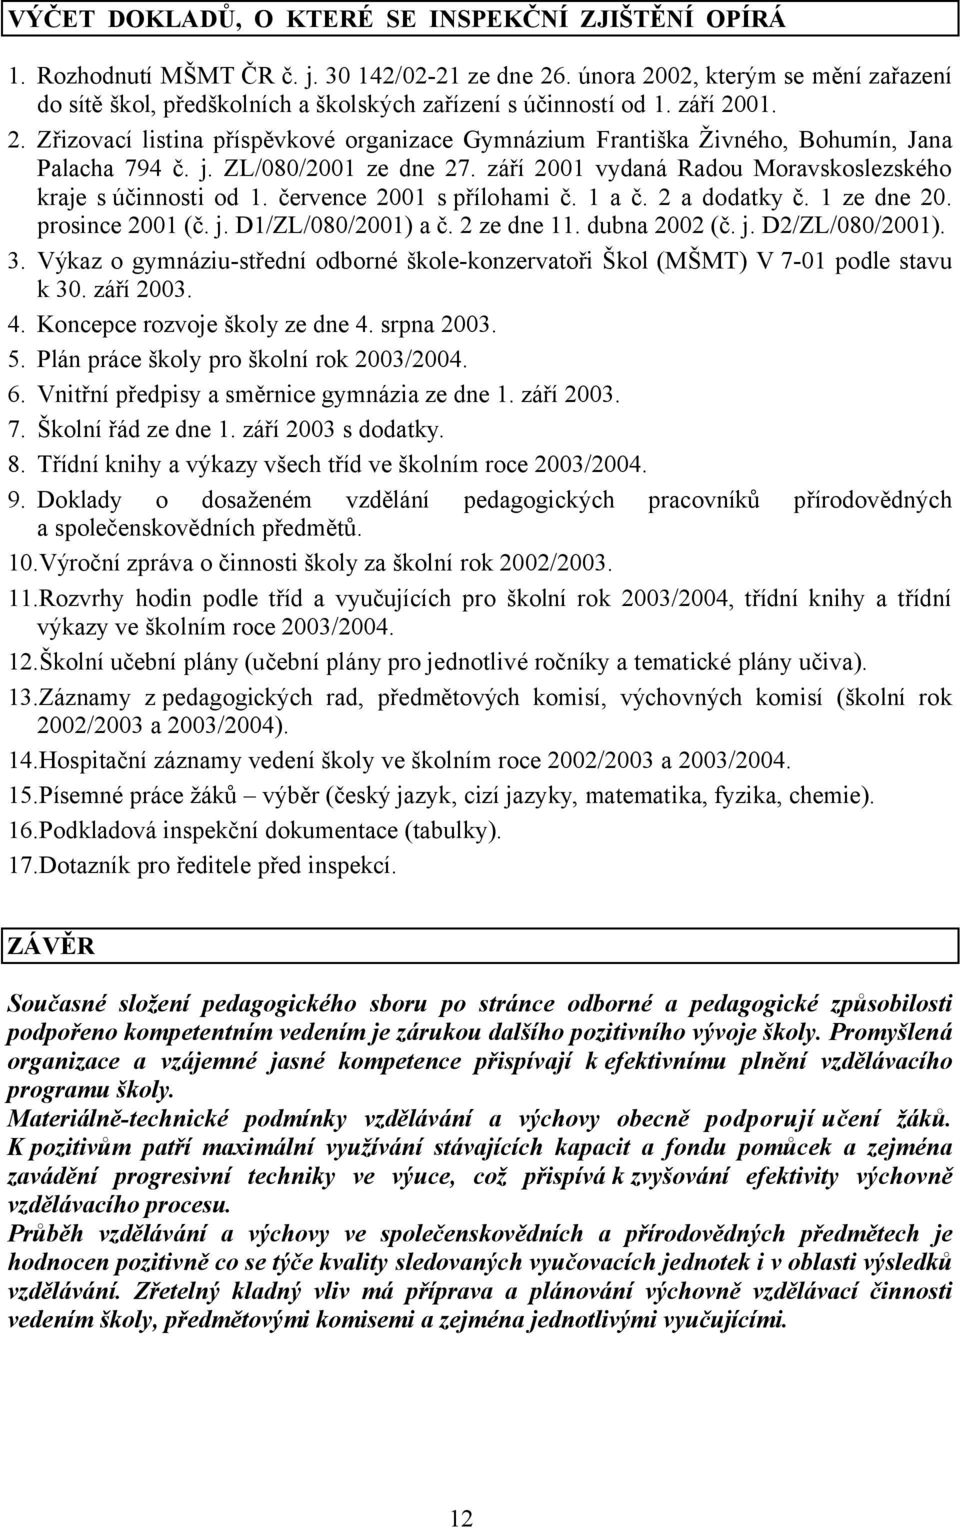 j. ZL/080/2001 ze dne 27. září 2001 vydaná Radou Moravskoslezského kraje s účinnosti od 1. července 2001 s přílohami č. 1 a č. 2 a dodatky č. 1 ze dne 20. prosince 2001 (č. j. D1/ZL/080/2001) a č.